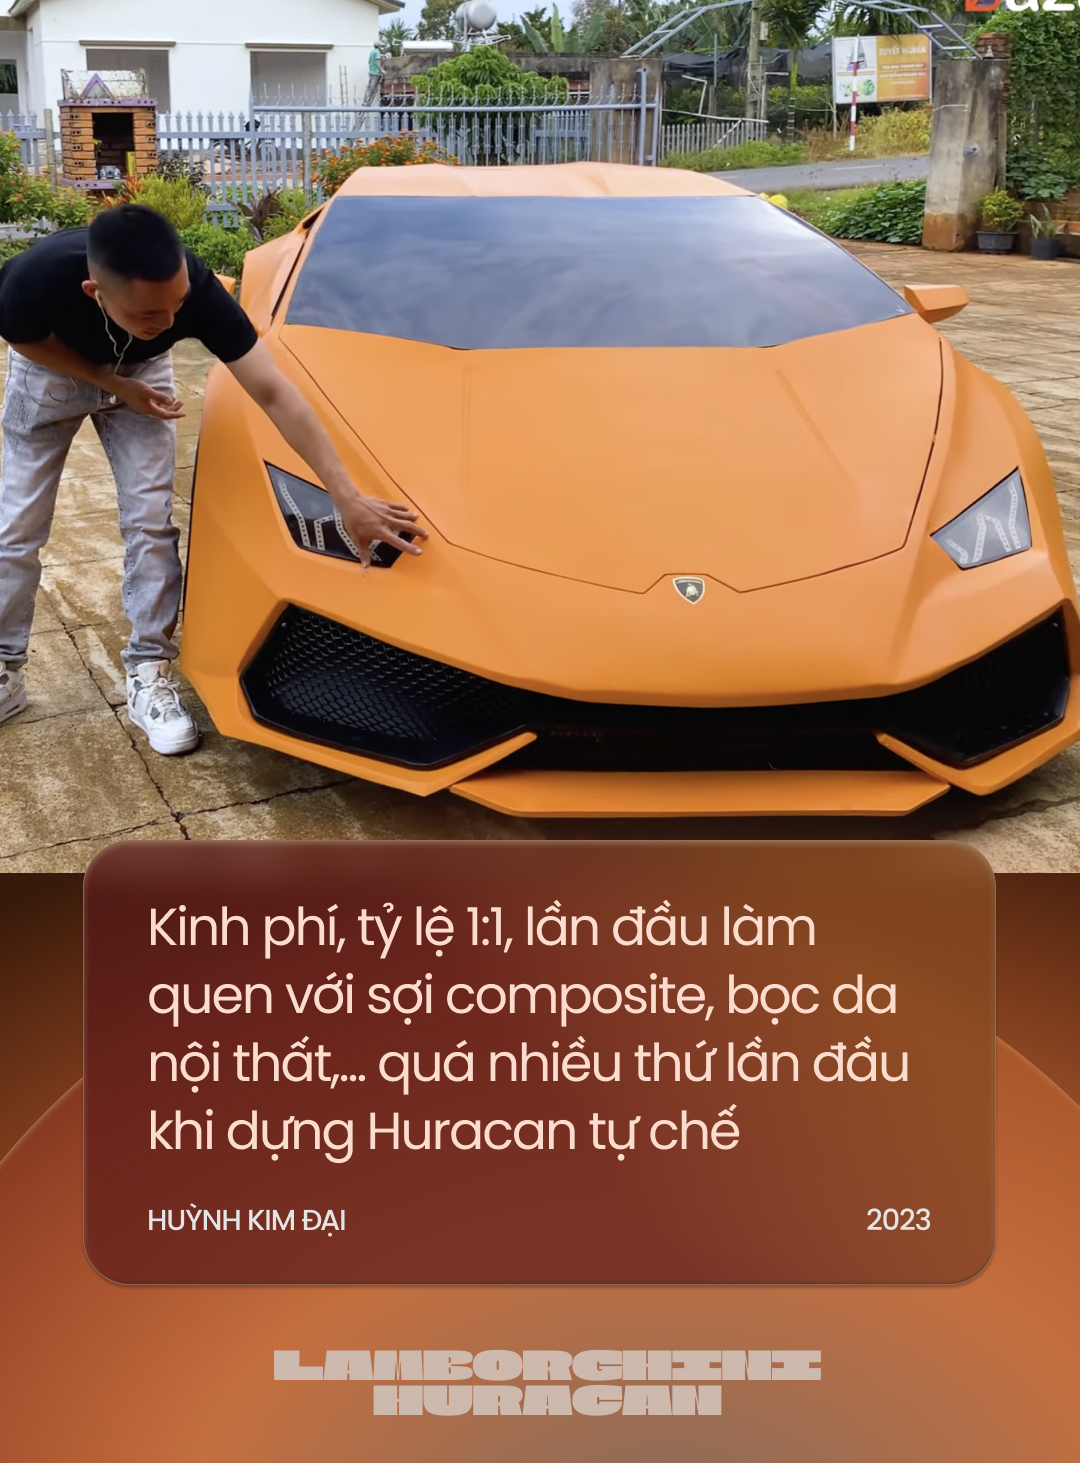 Đôi bạn Tây Nguyên tự chế Lamborghini Huracan khiến cộng đồng quốc tế trầm trồ: Năm tới sẽ chuyển mình để độc lạ nhất Việt Nam - Ảnh 9.